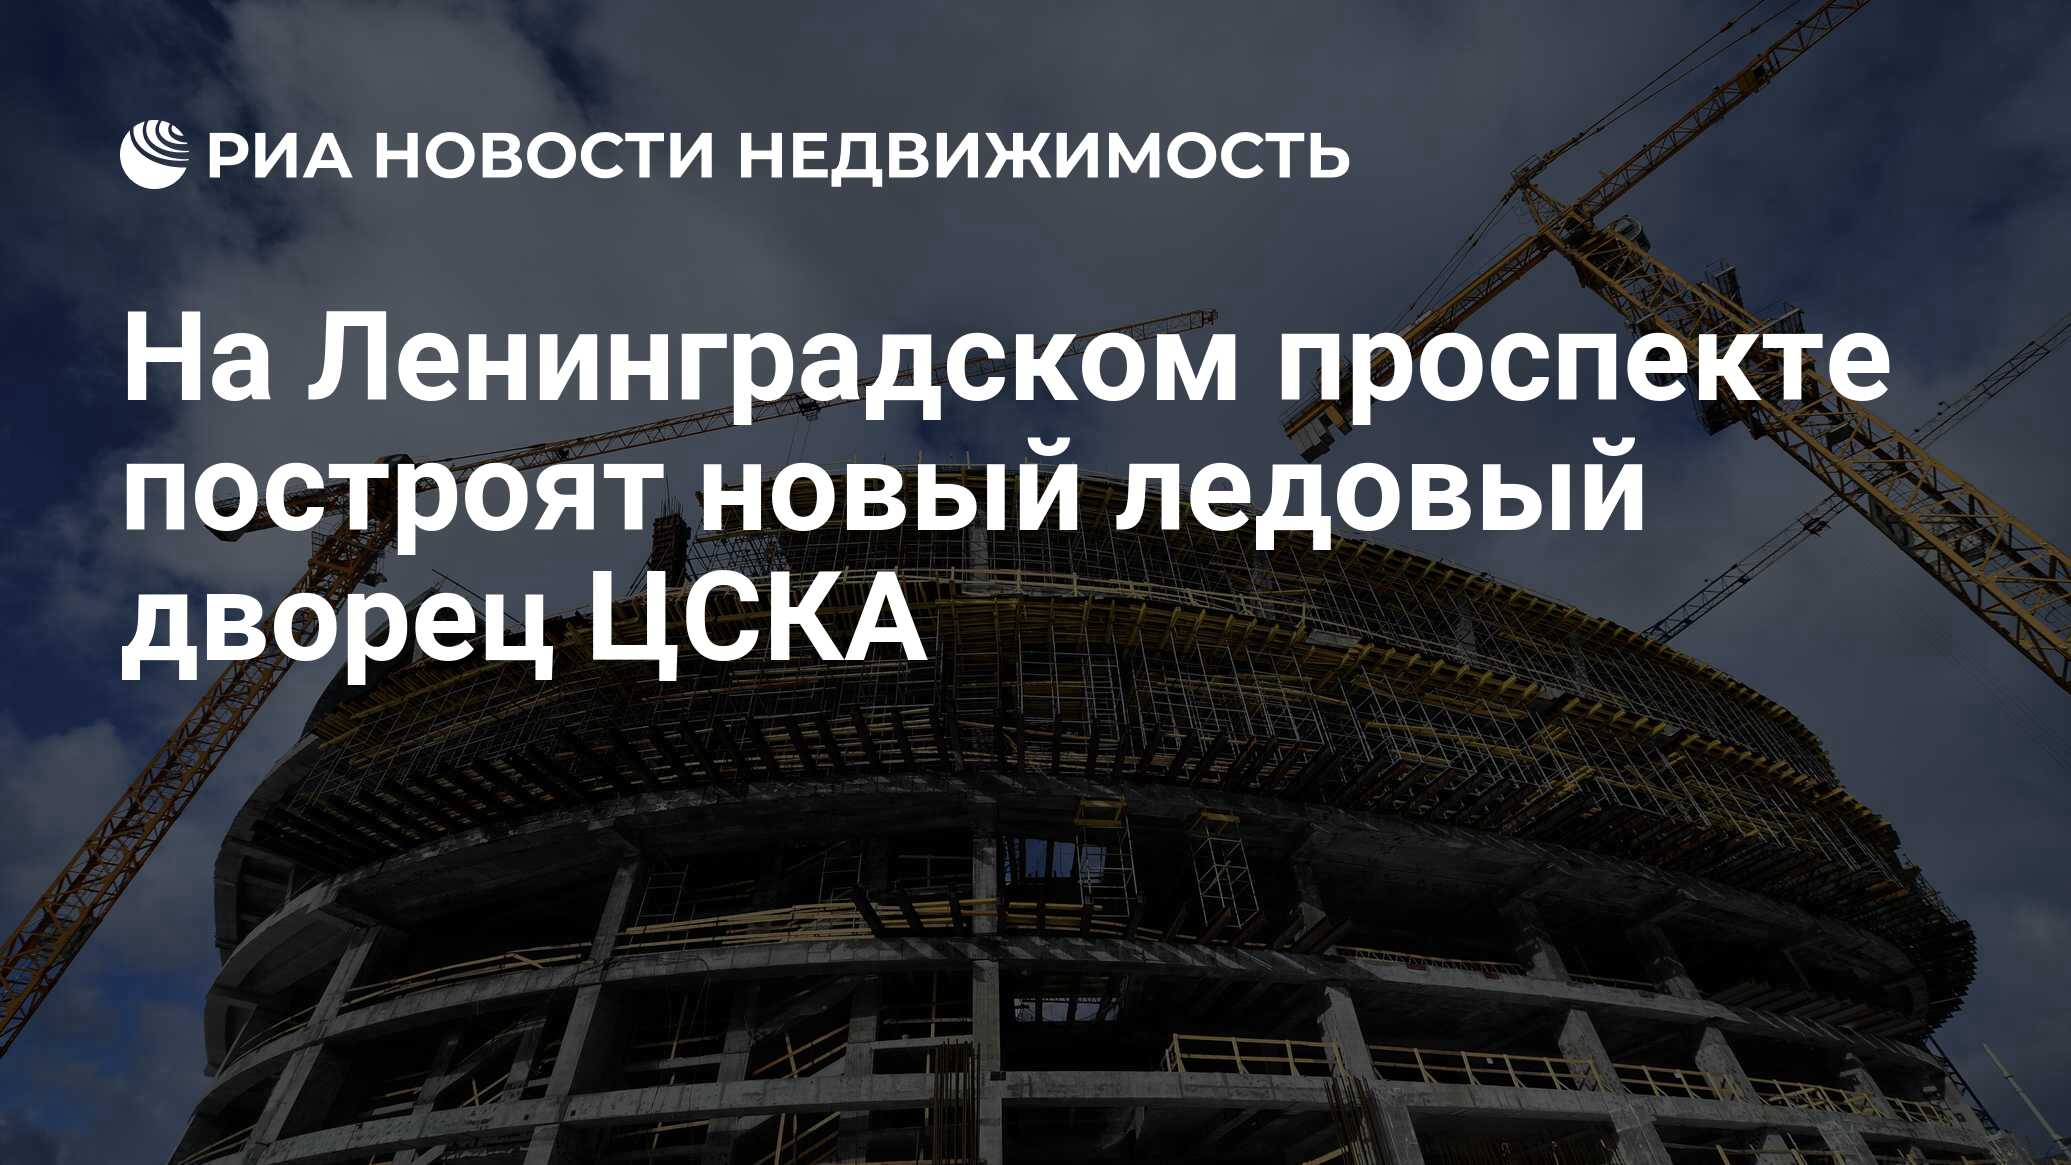 Новый ледовый дворец цска на ленинградке фото